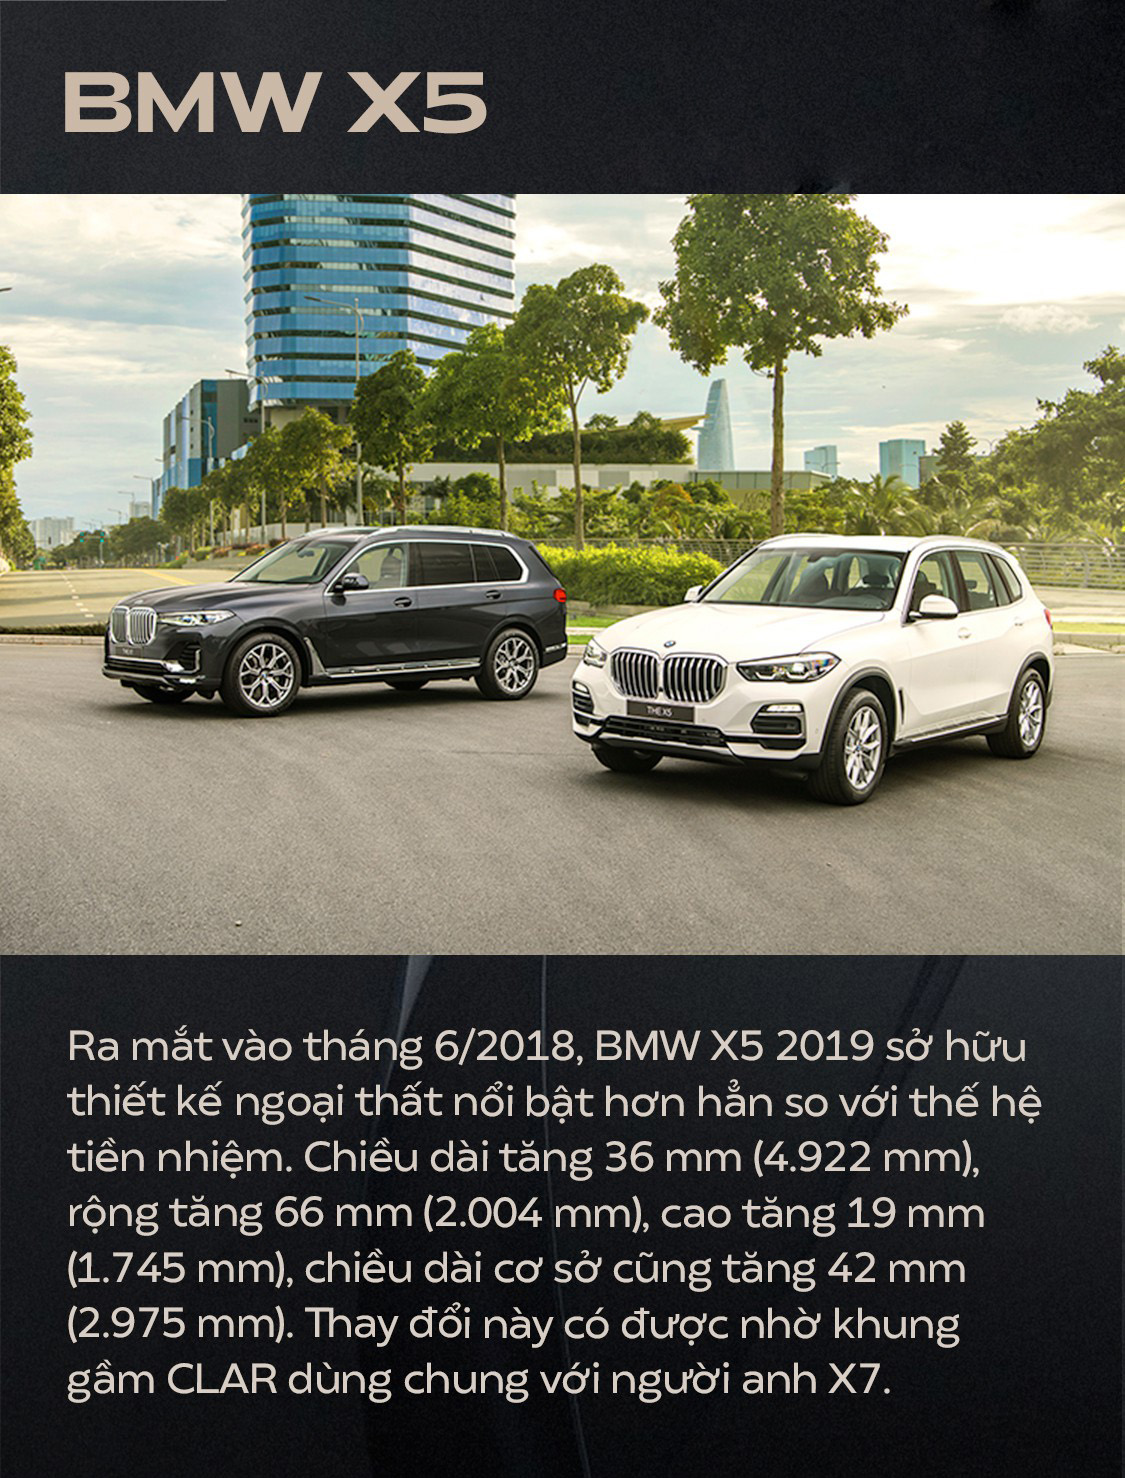 BMW X5 2019 tại Việt Nam được trang bị những gì? 1a